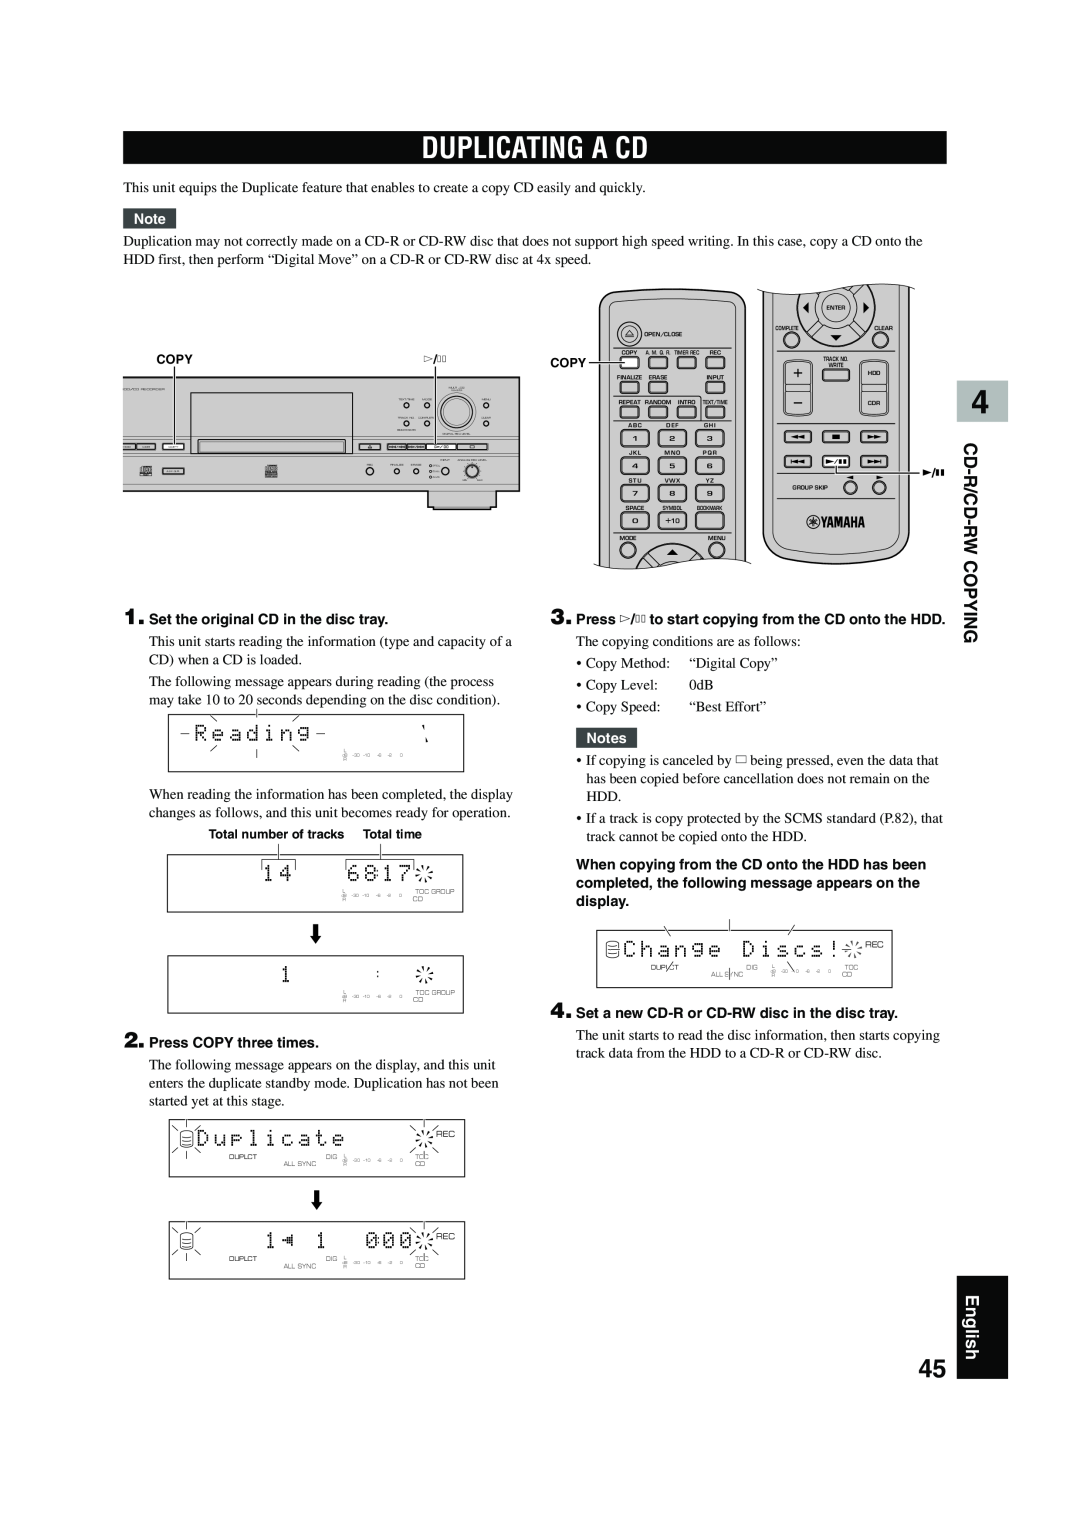 Yamaha CDR-HD 1500 owner manual Duplicating A Cd, C h a n g e D i s c s !REC, R e a d i n g, Cd-R/Cd -Rw, Copying, English 